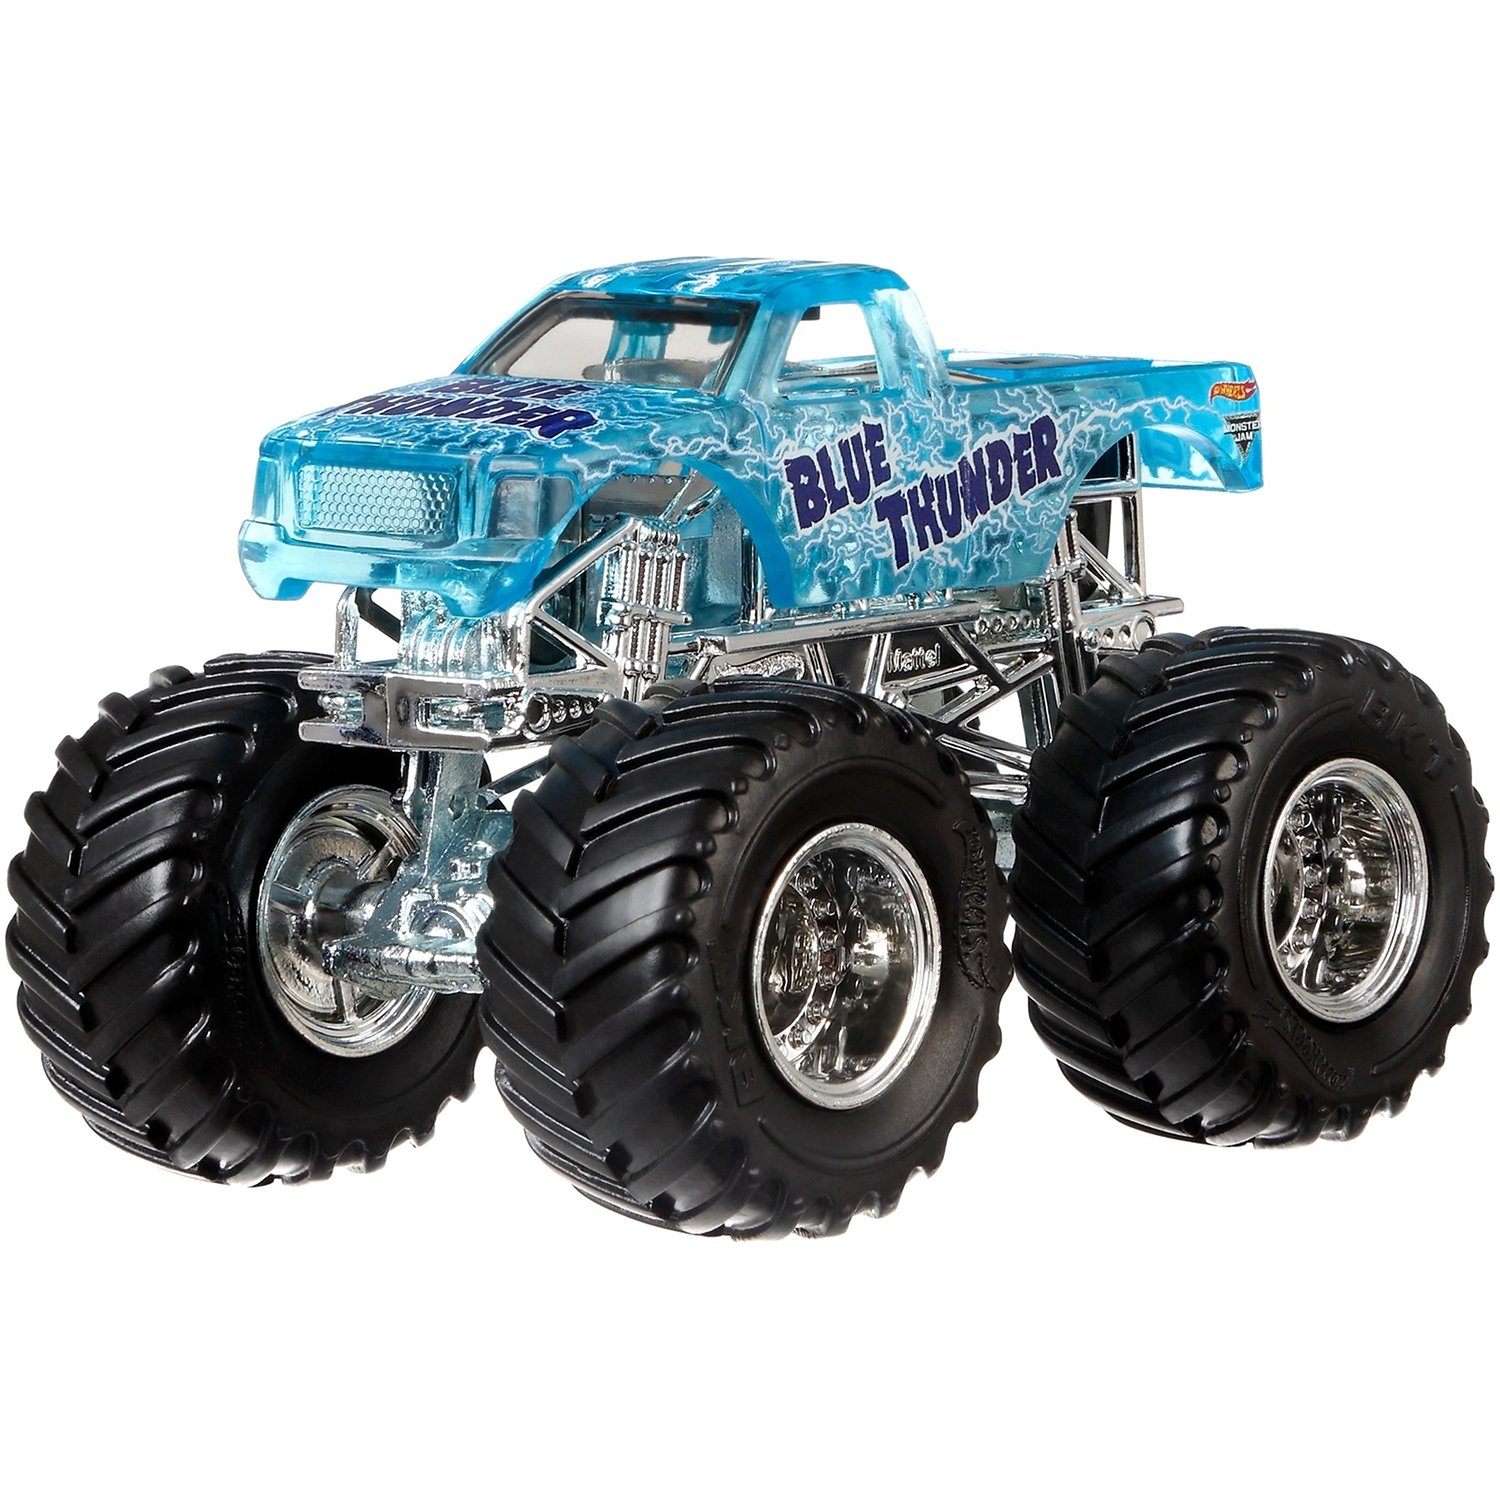 Монстр-трак hot Wheels Monster Jam Blue Thunder (flw85) 1:64 9 см